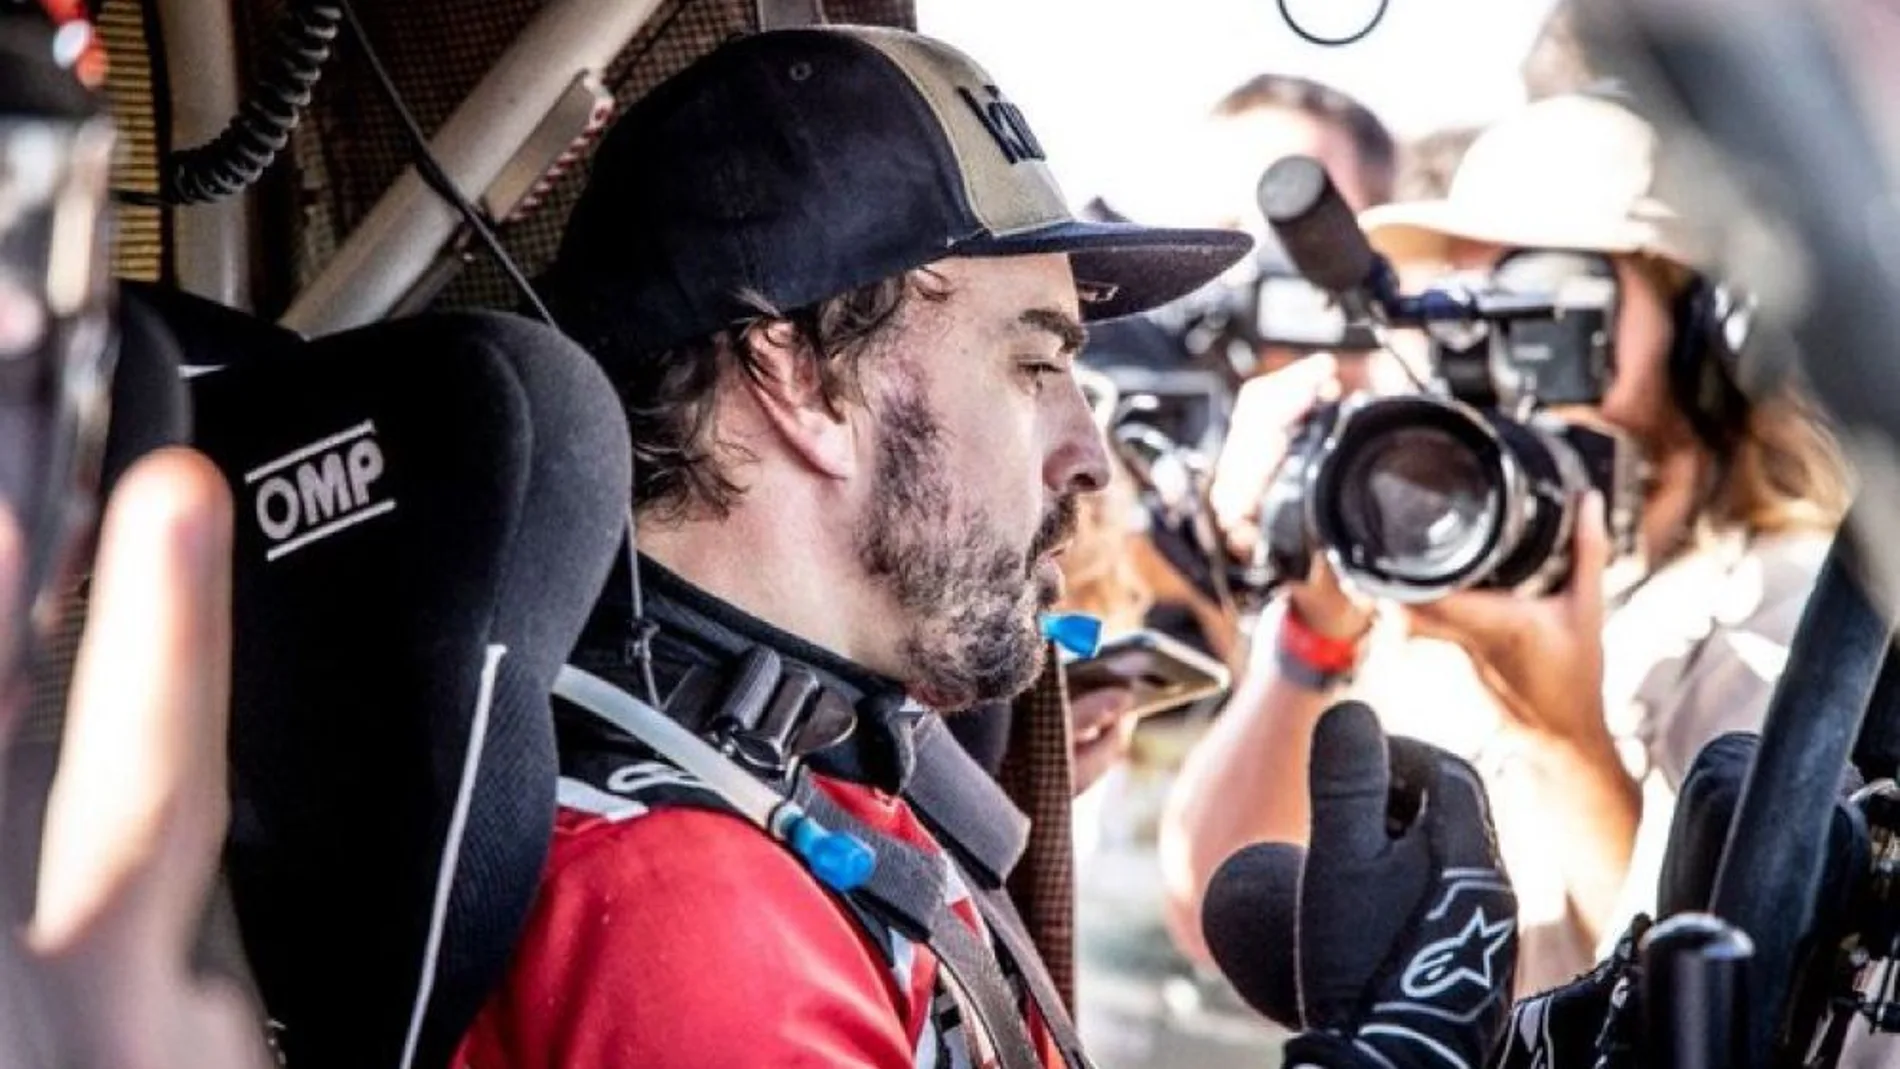 Deportes Antena 3 (09-11-19) Fernando Alonso logra su primer podio en un rally antes de afrontar el Dakar 2020